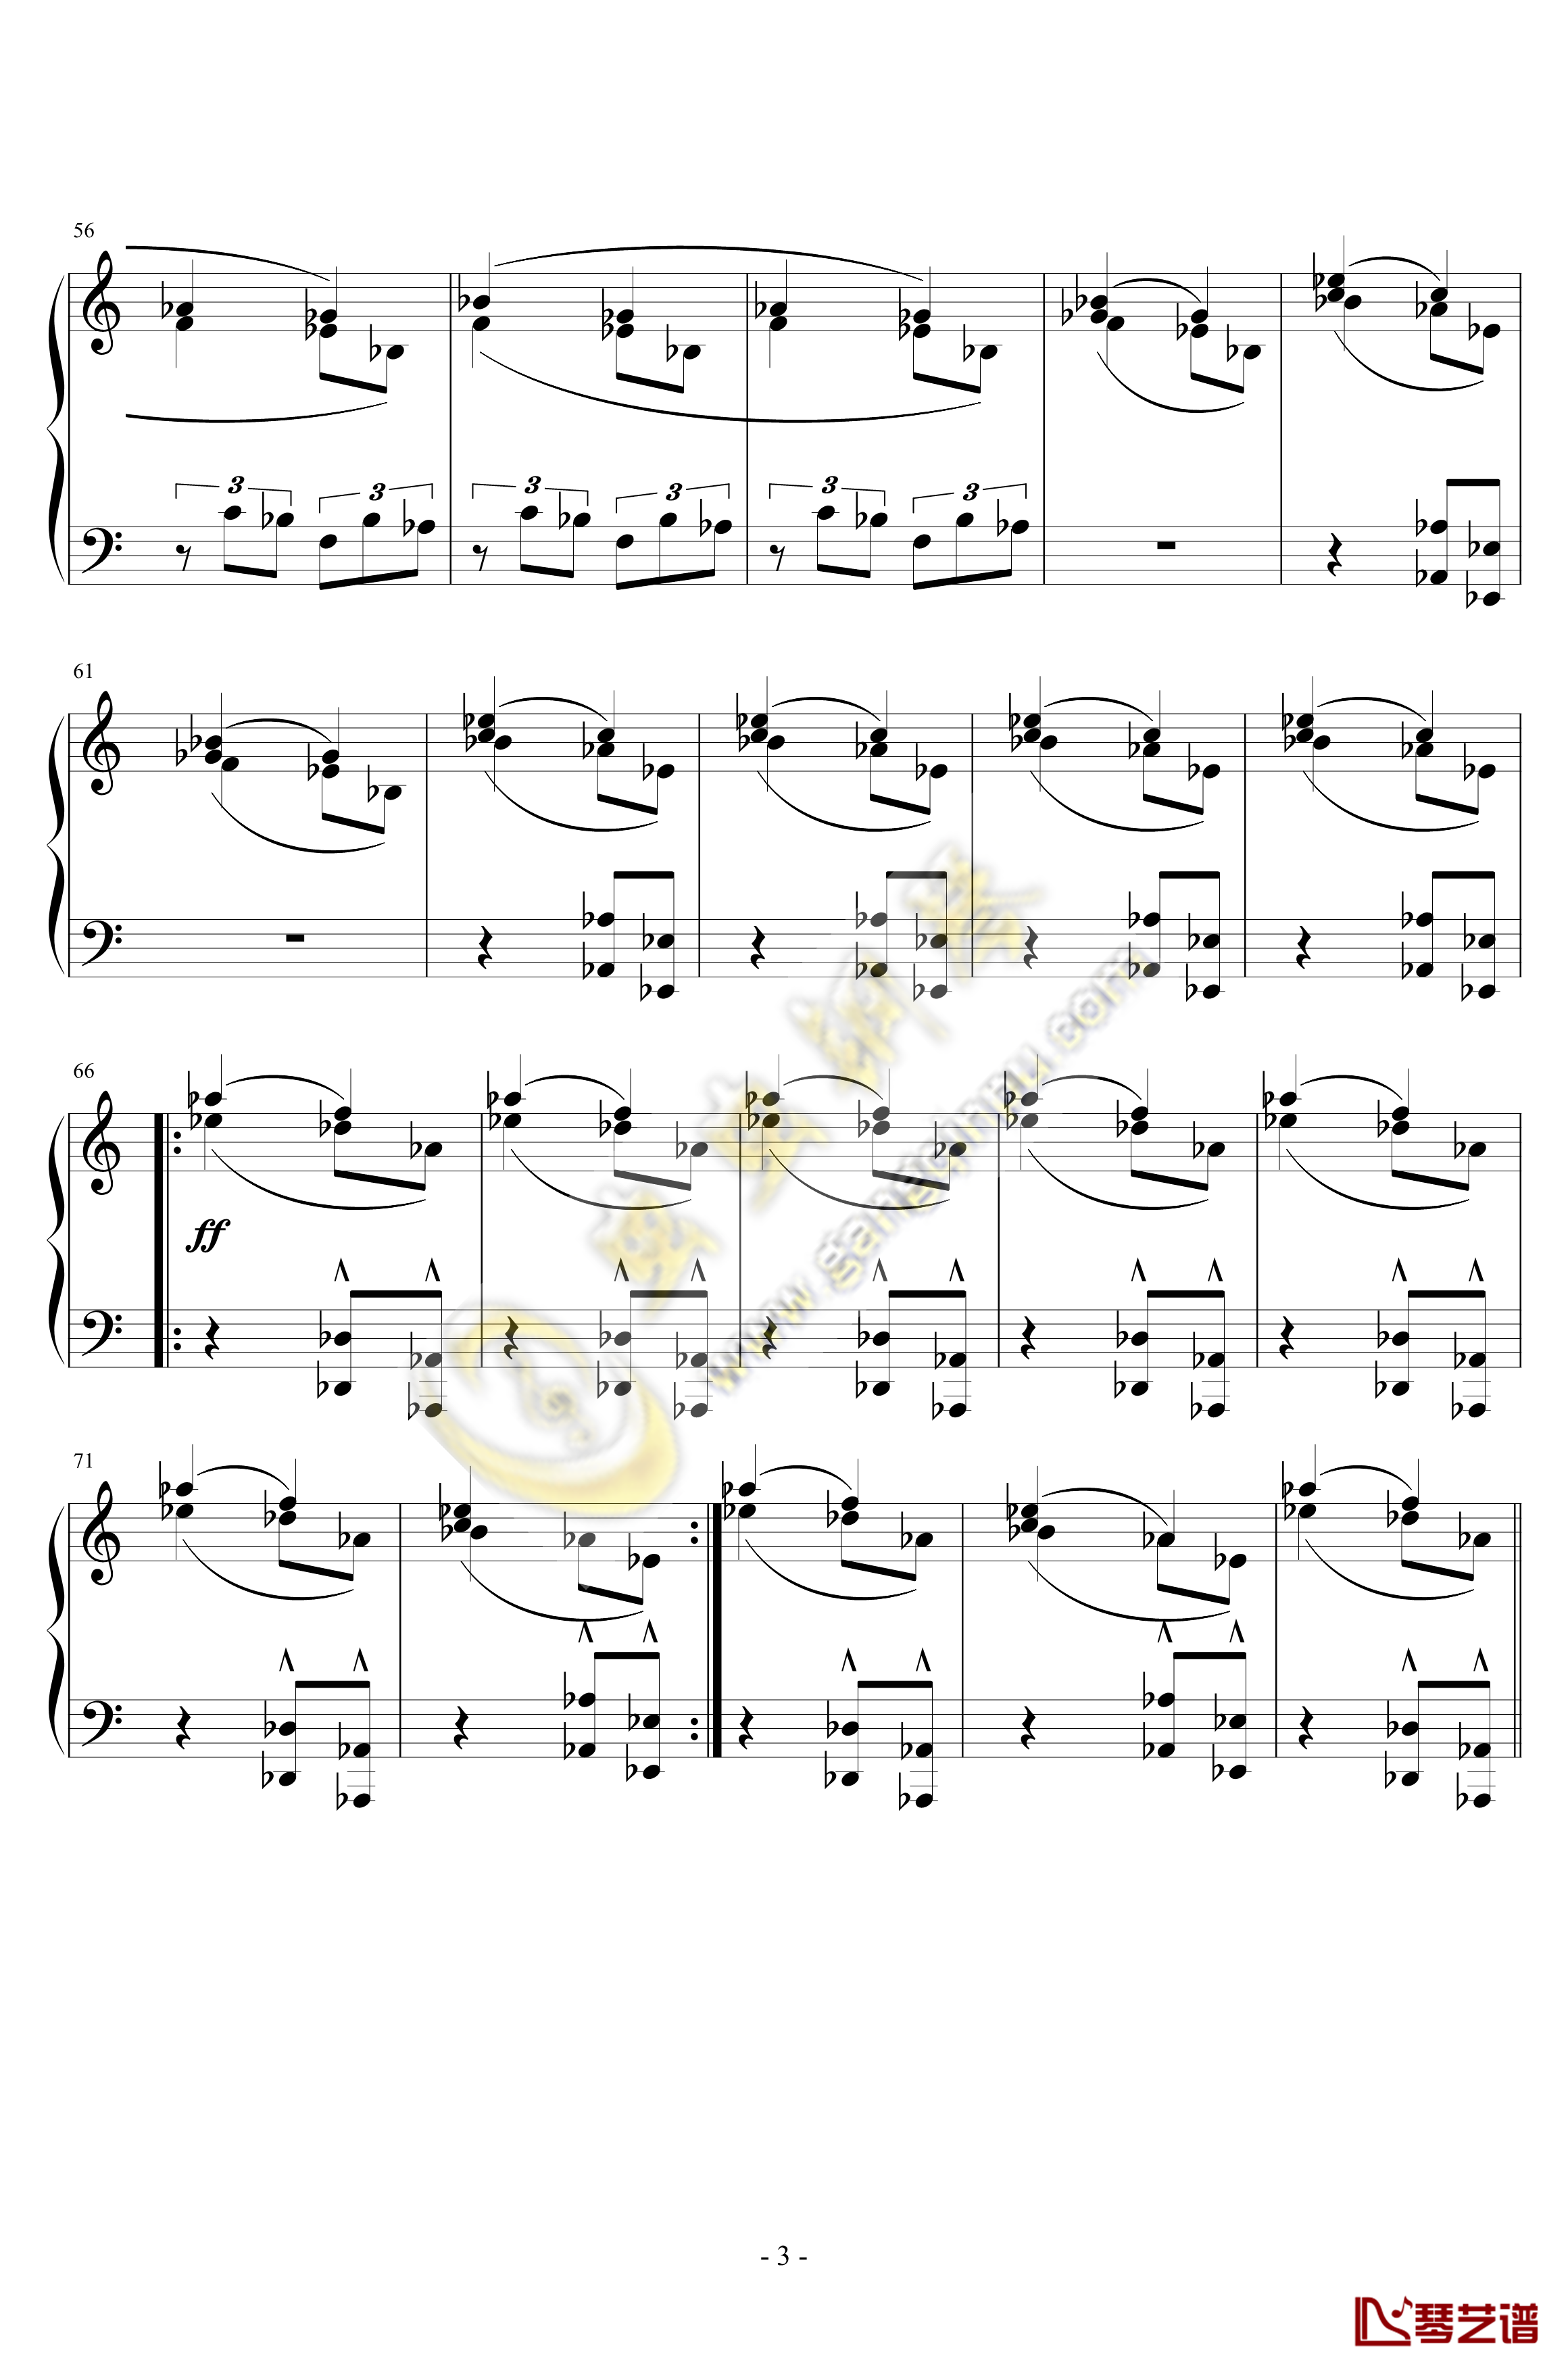 小交响曲钢琴谱-第一乐章-雅纳切克3